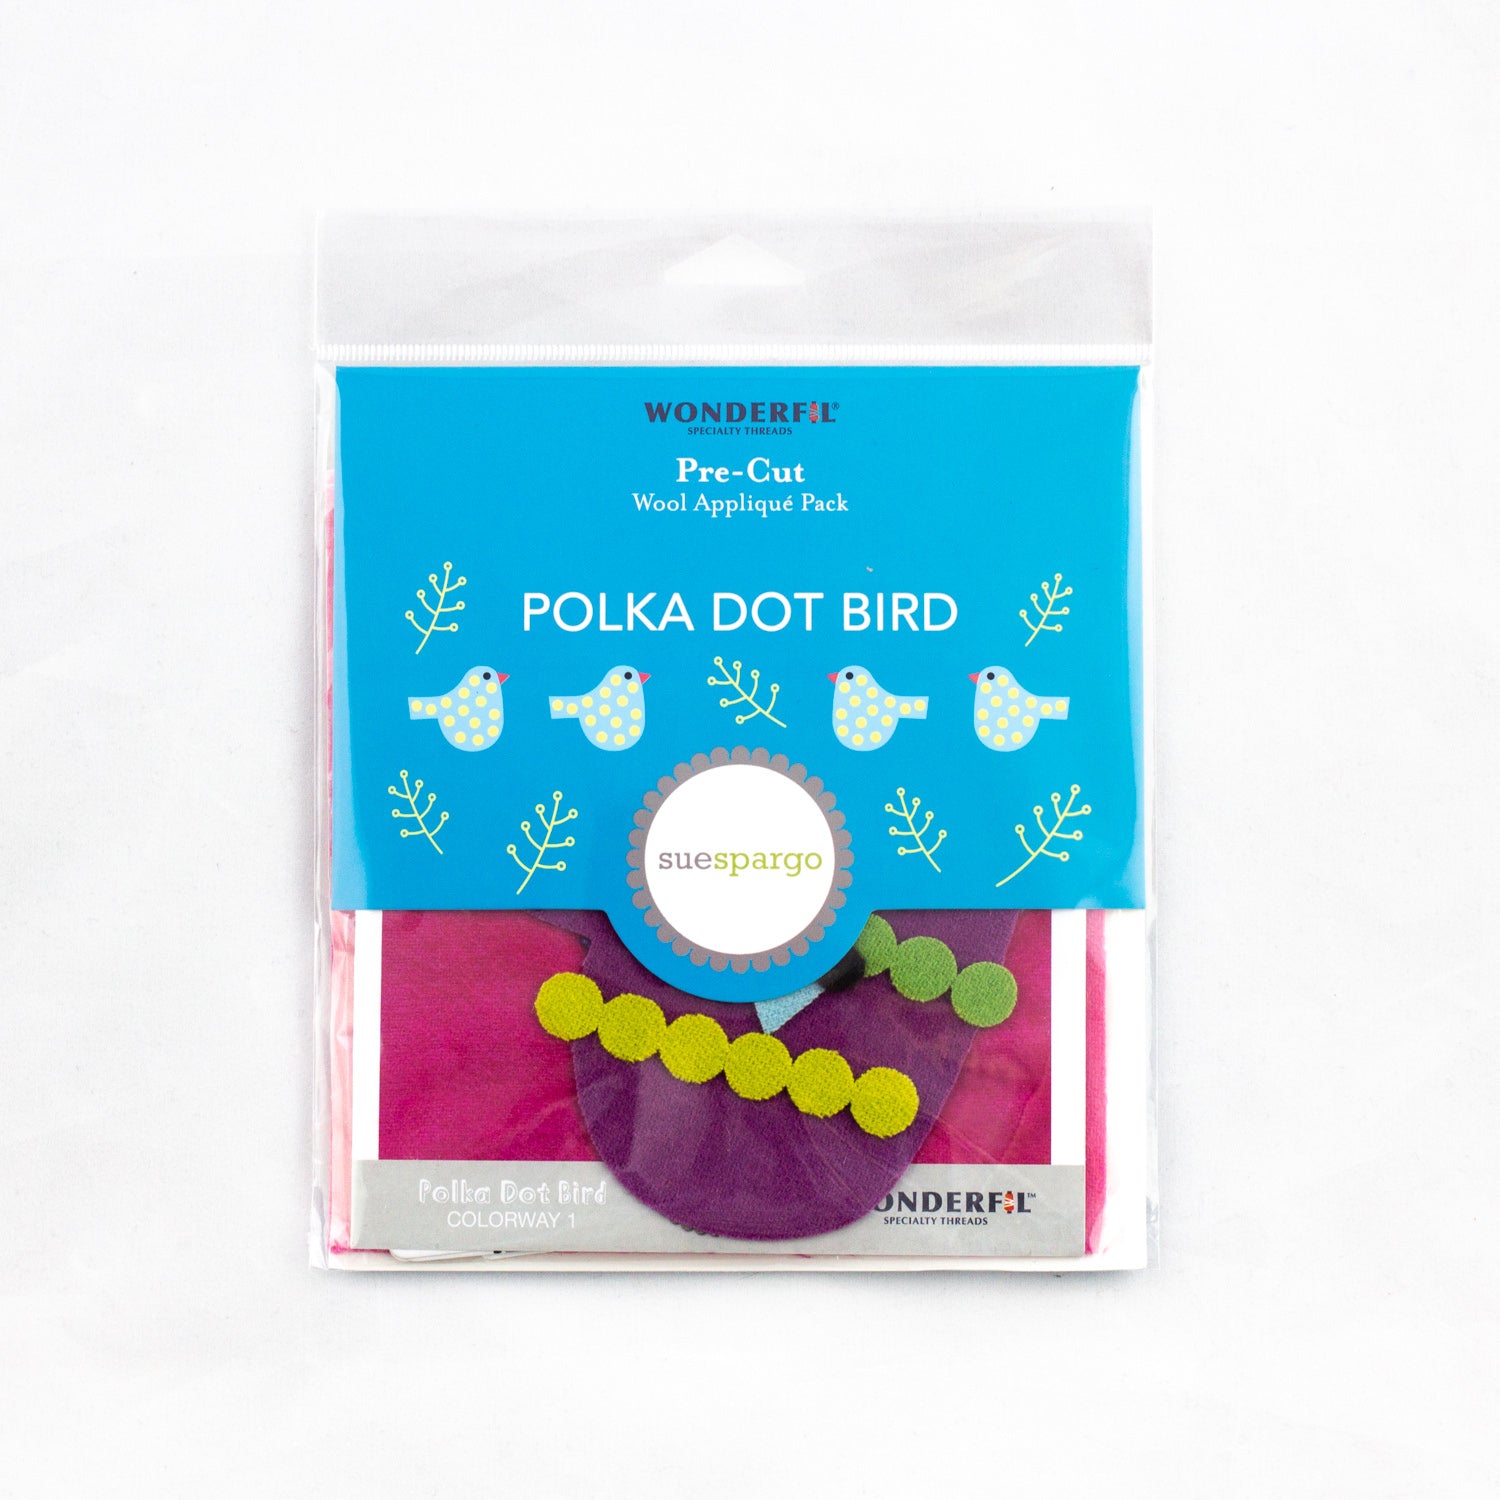 Pre-cut Wool Kit Polka Dot Bird Colourway 1 - Sue Spargo